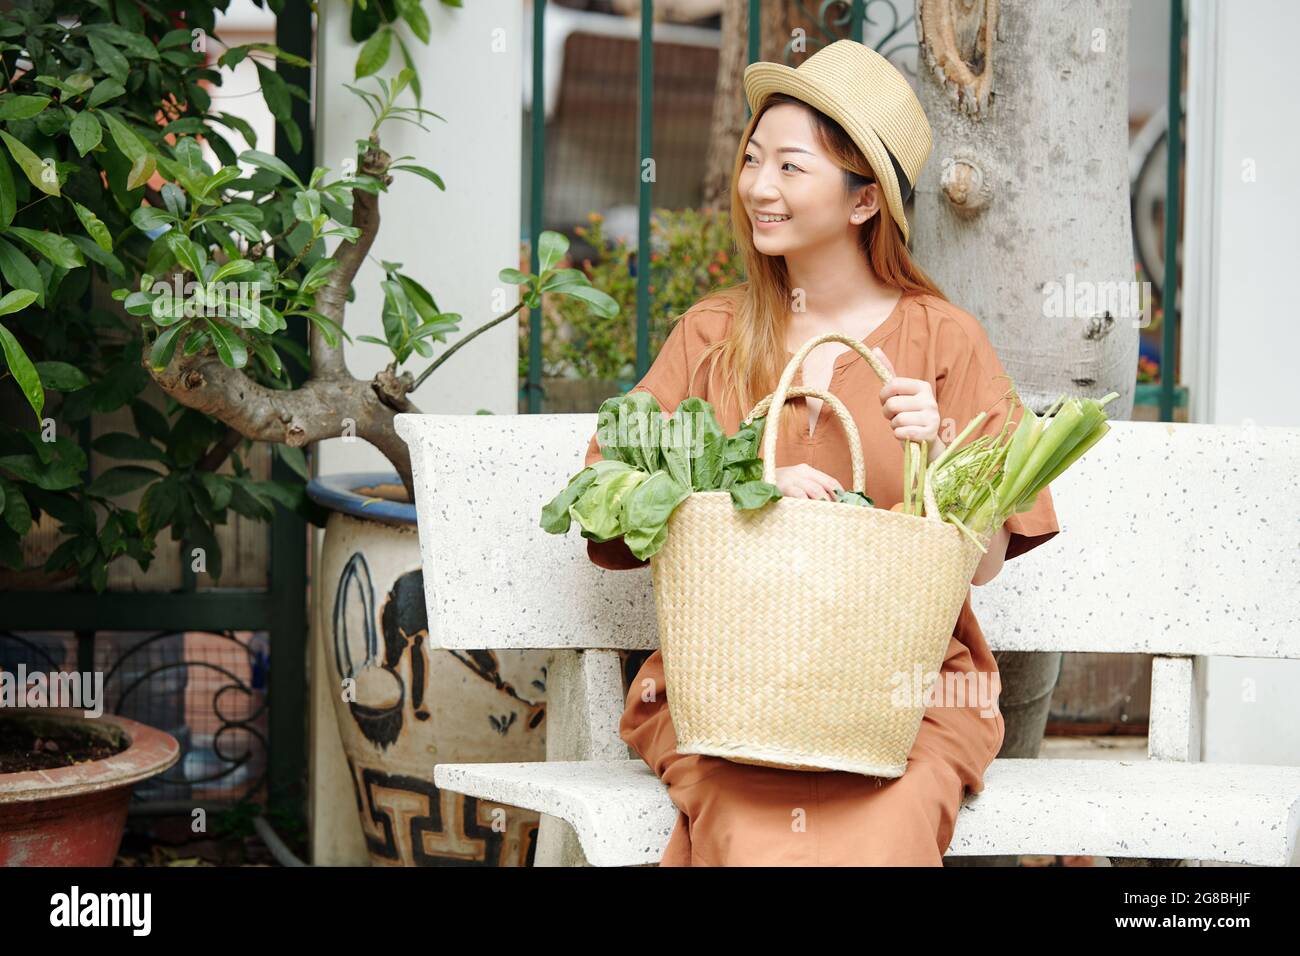 Porträt einer hübschen jungen Frau, die mit einer Tüte frischer Lebensmittel, die sie auf dem lokalen Markt gekauft hat, auf der Bank sitzt Stockfoto